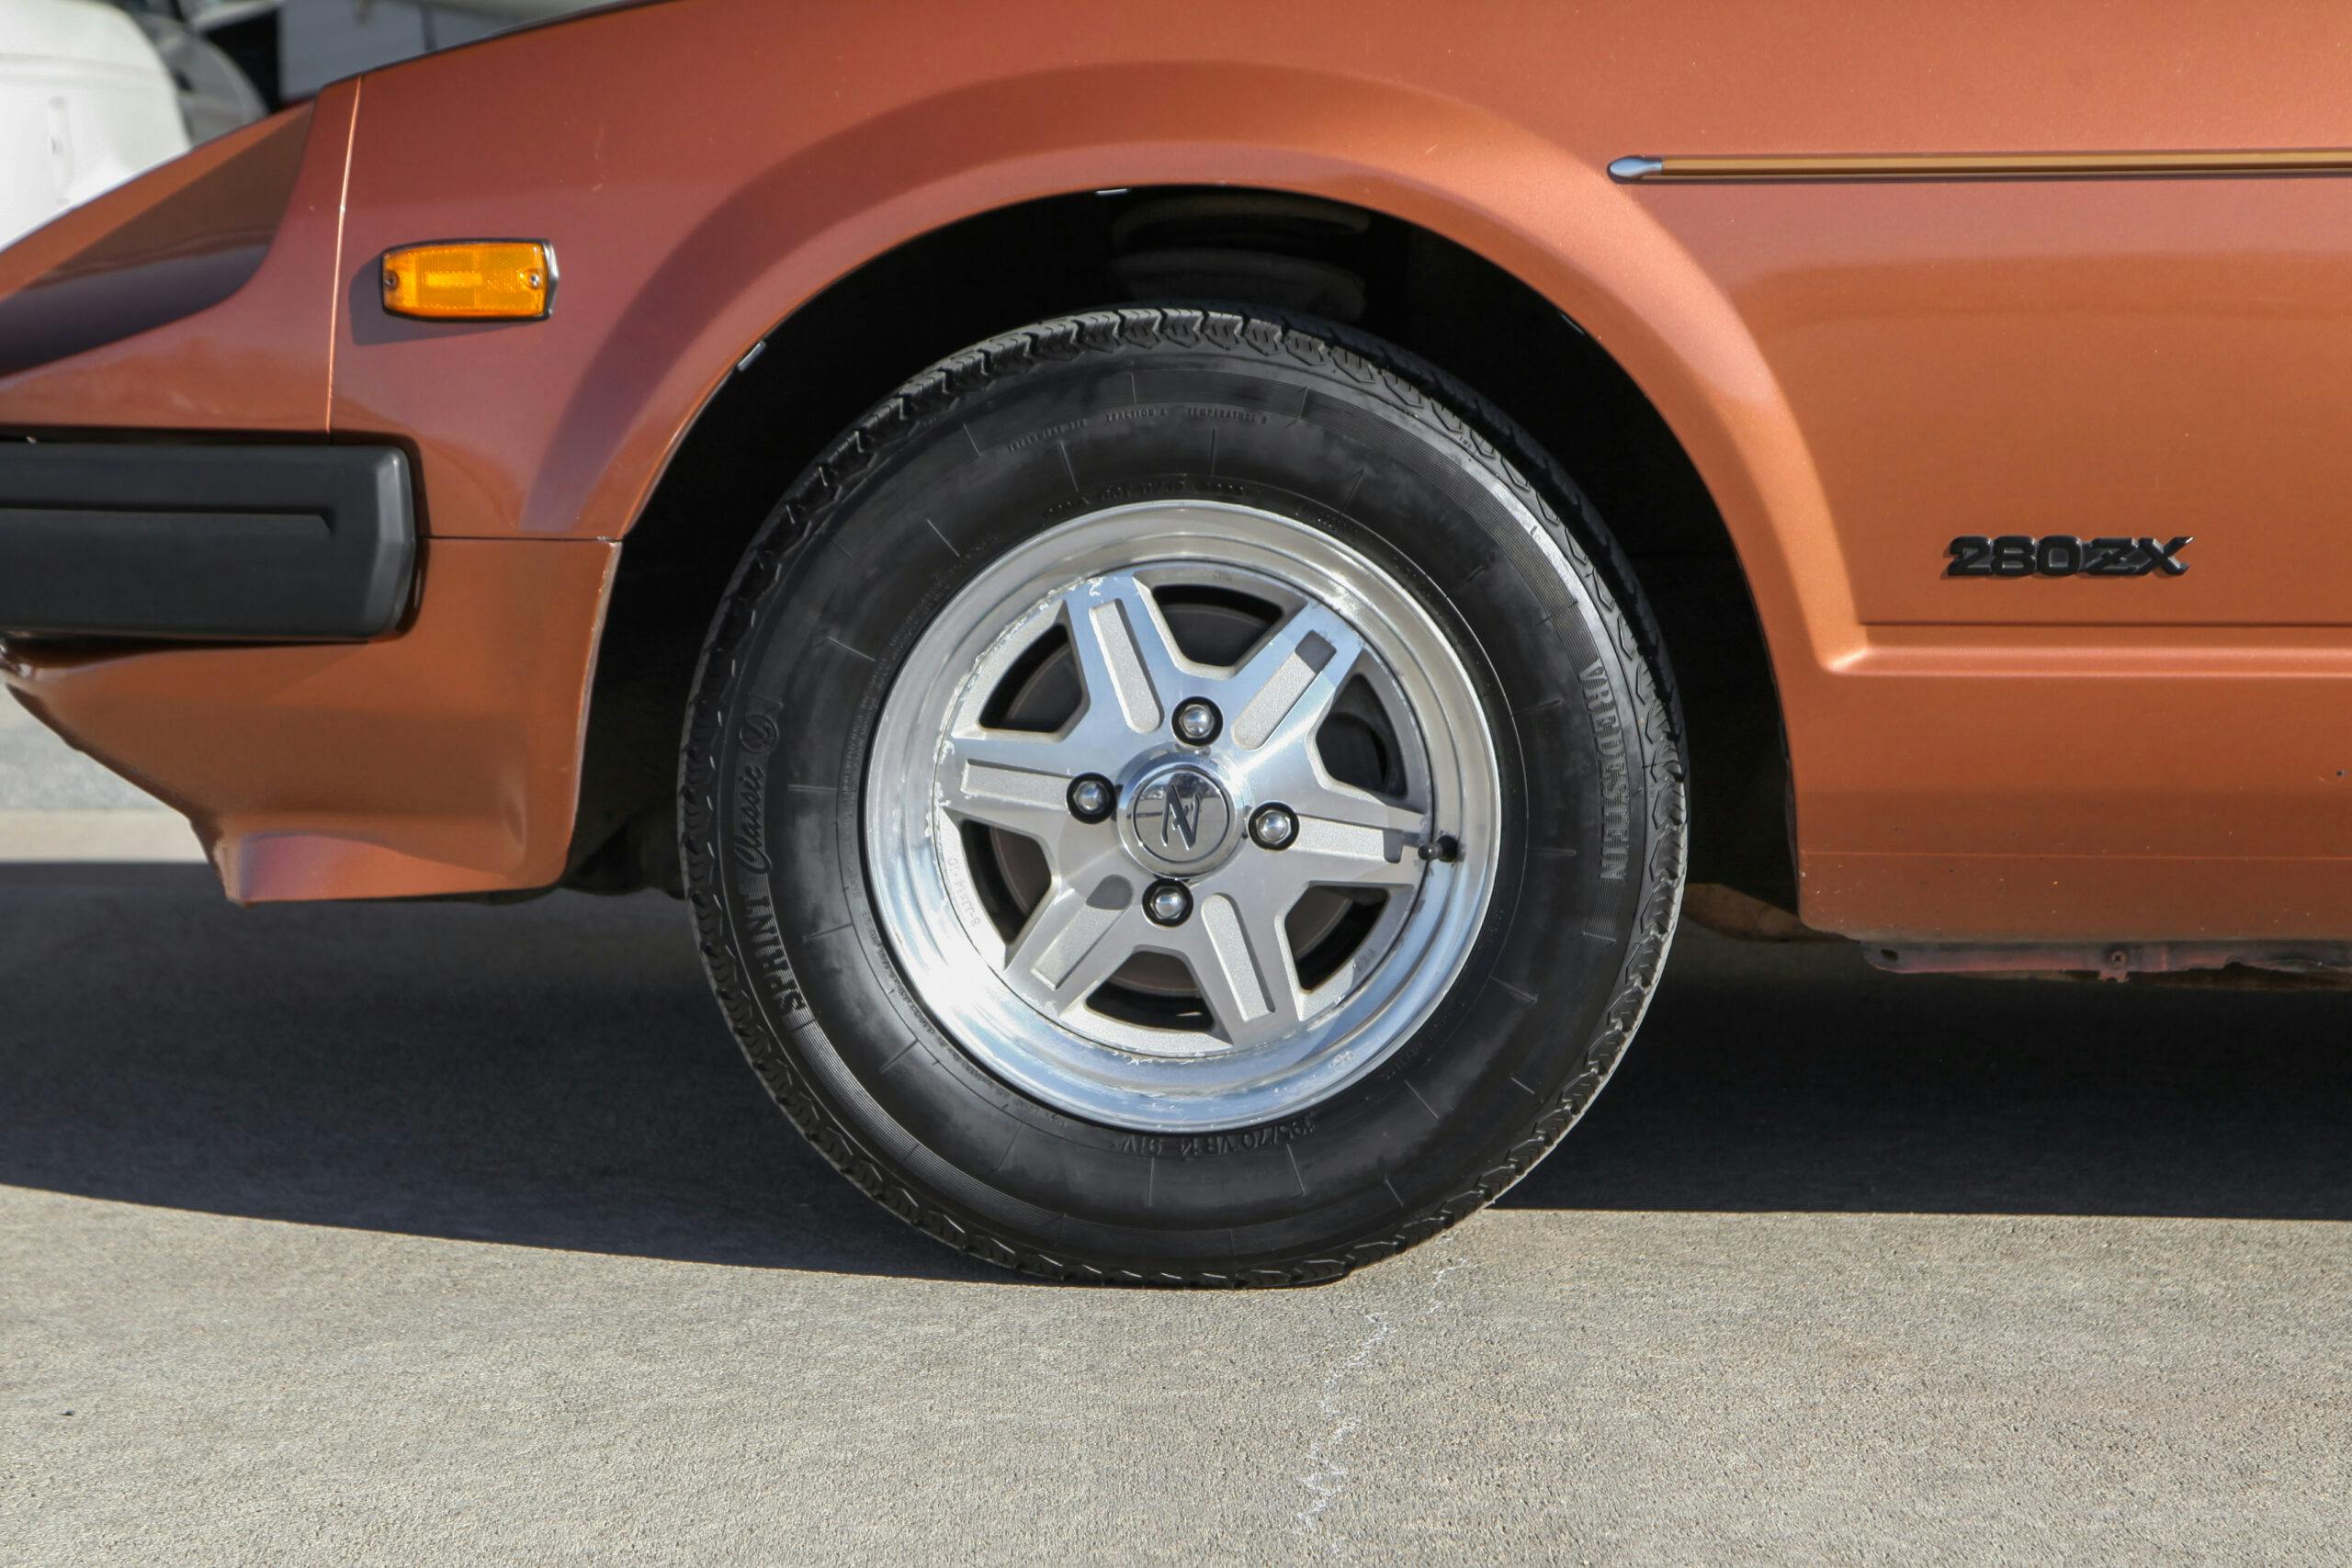 1981 Datsun 280ZX front wheel tire